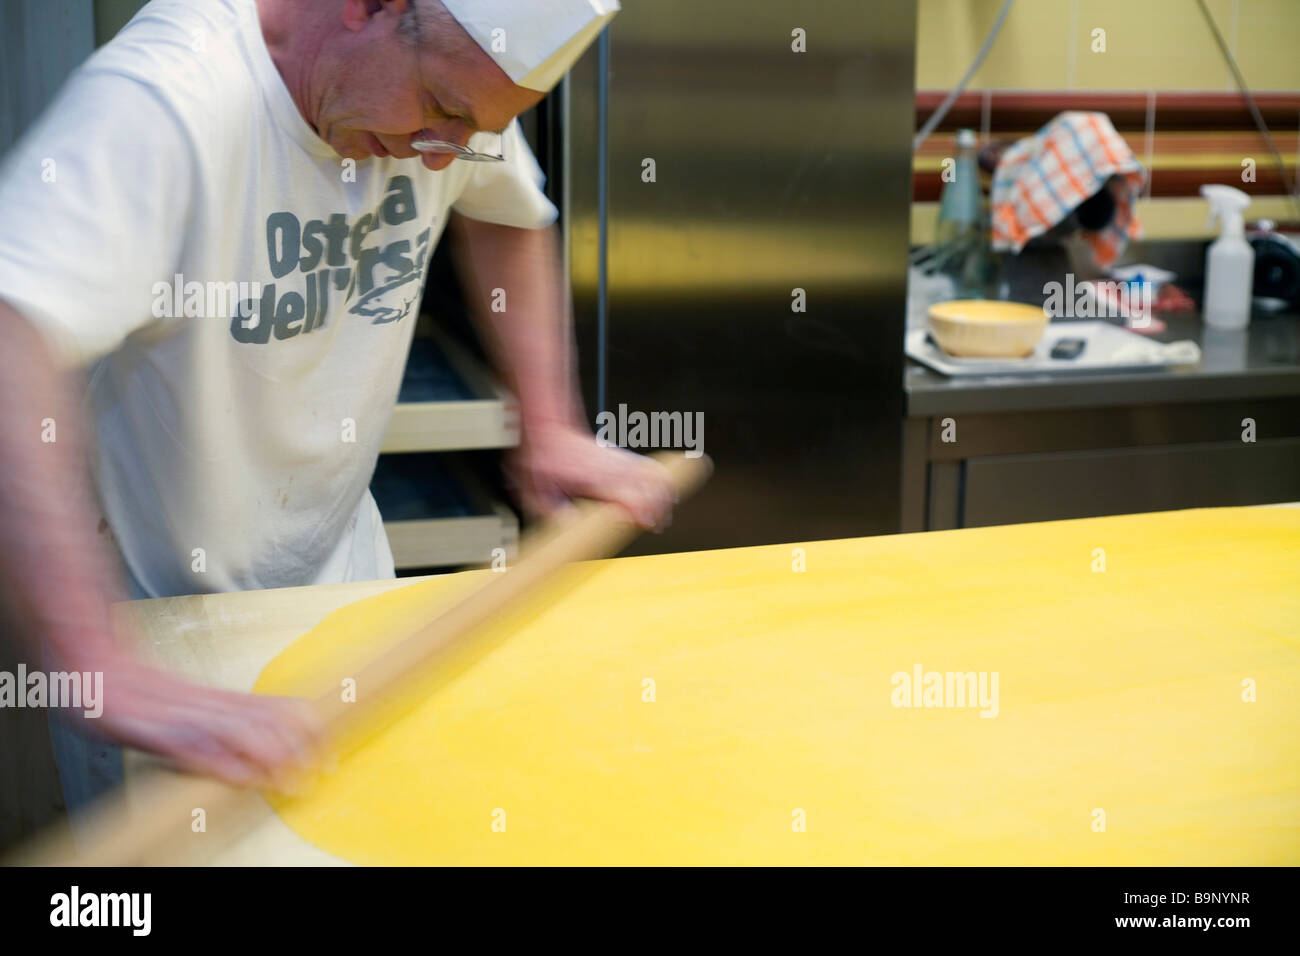 Un chef roule pour pâtes tortellini à la boulangerie Osteria dell'Orsa Banque D'Images